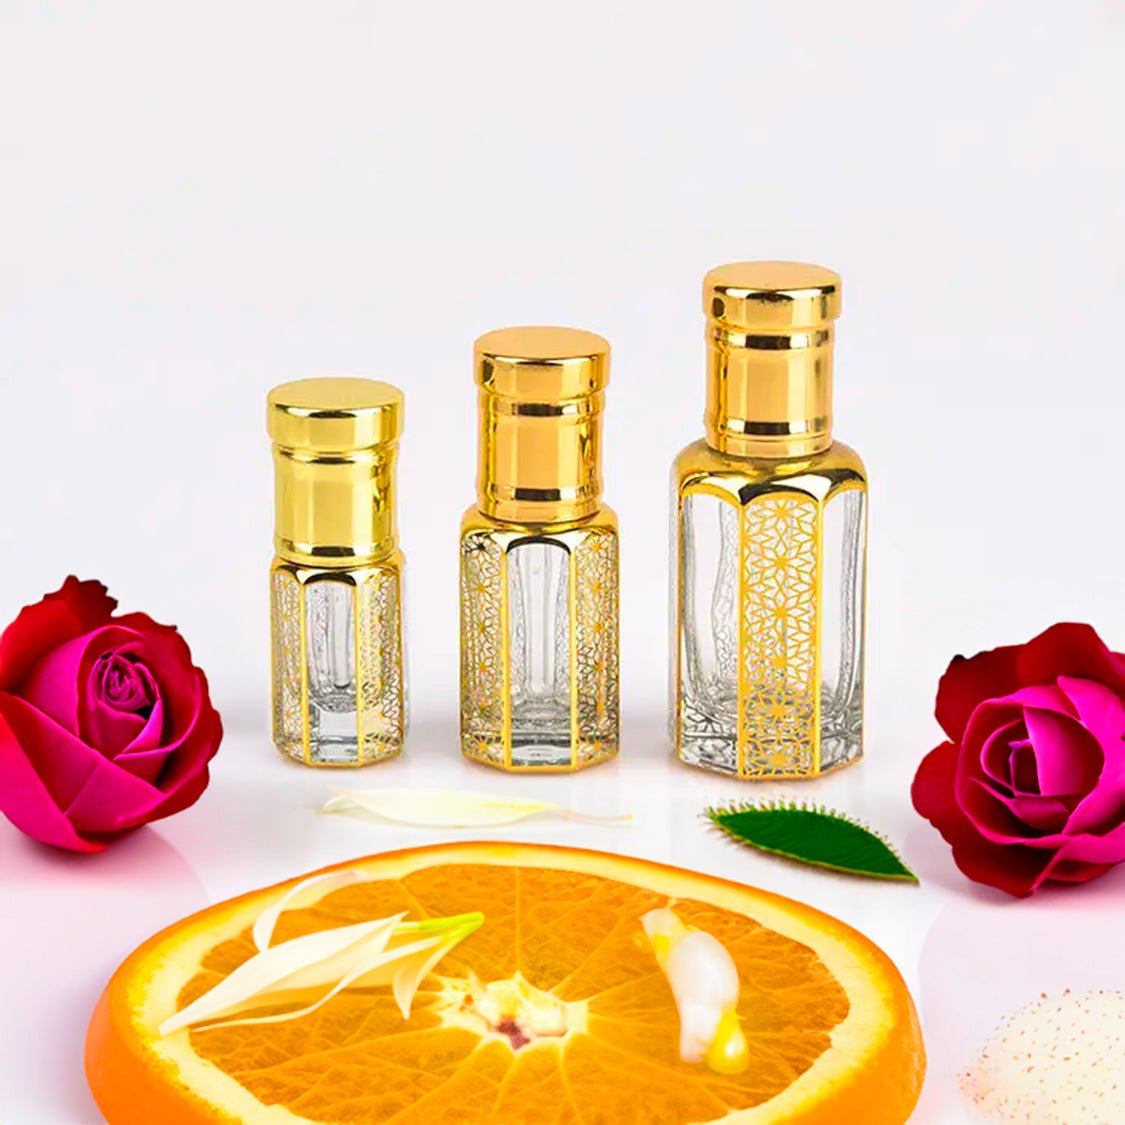 coco chanel oil perfume